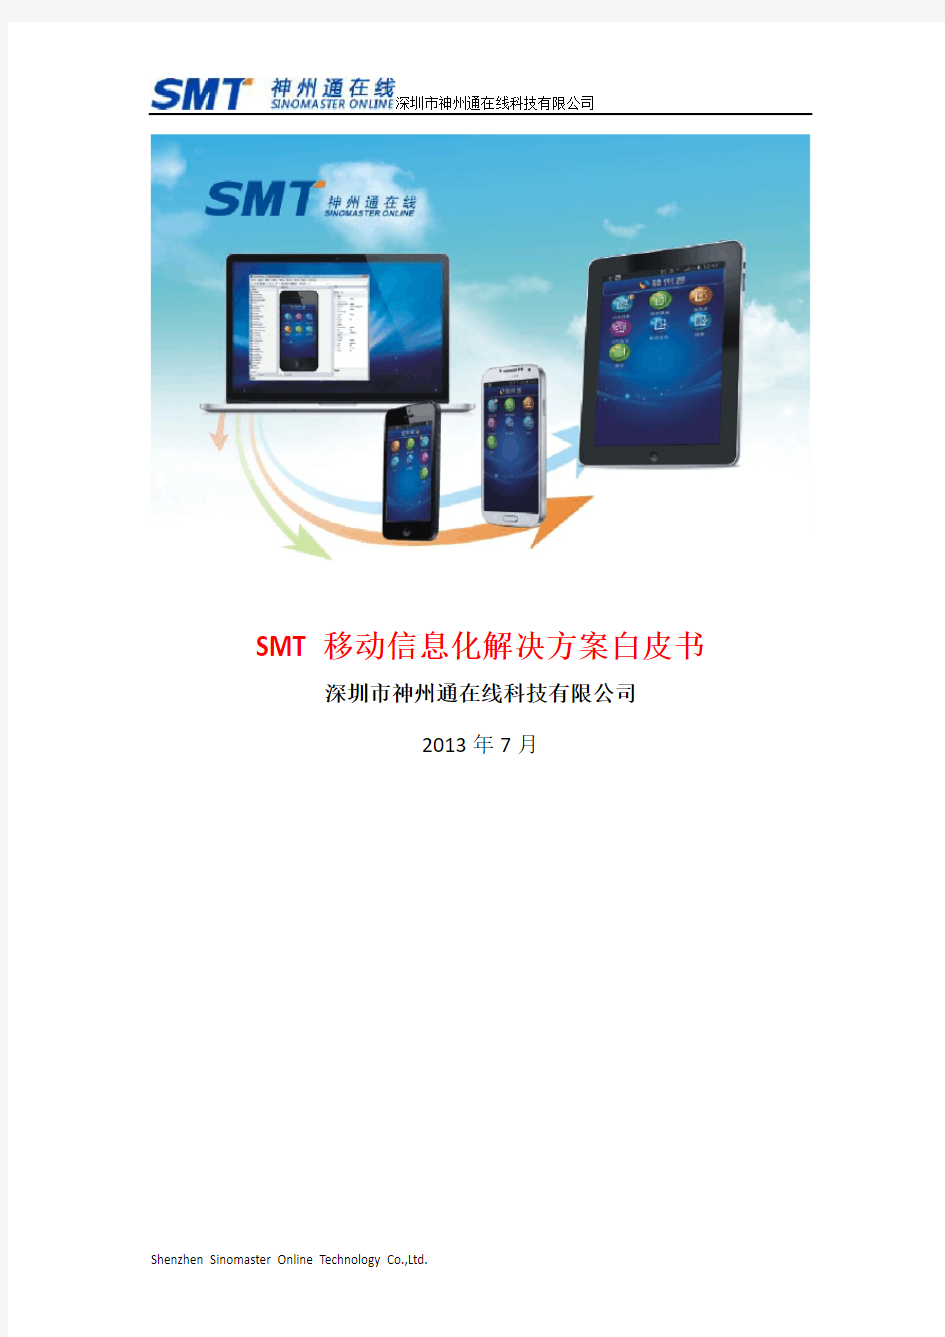 SMT移动信息化解决方案白皮书v1.1